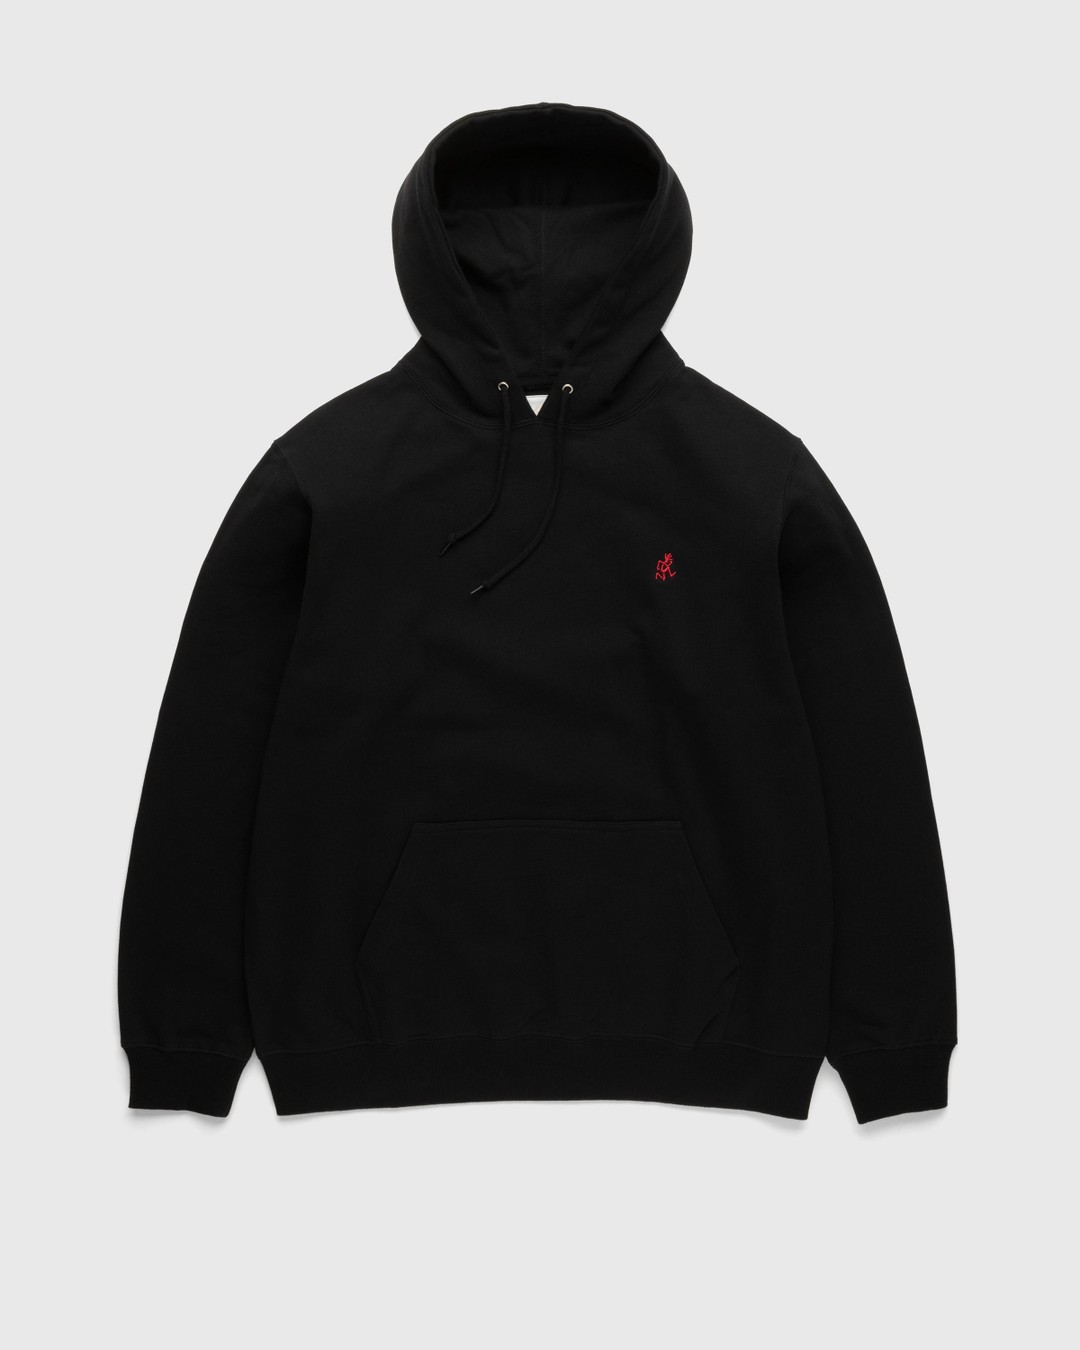 Gramicci – One Point Hooded Sweatshirt Black - Hoodies - Black - Image 1